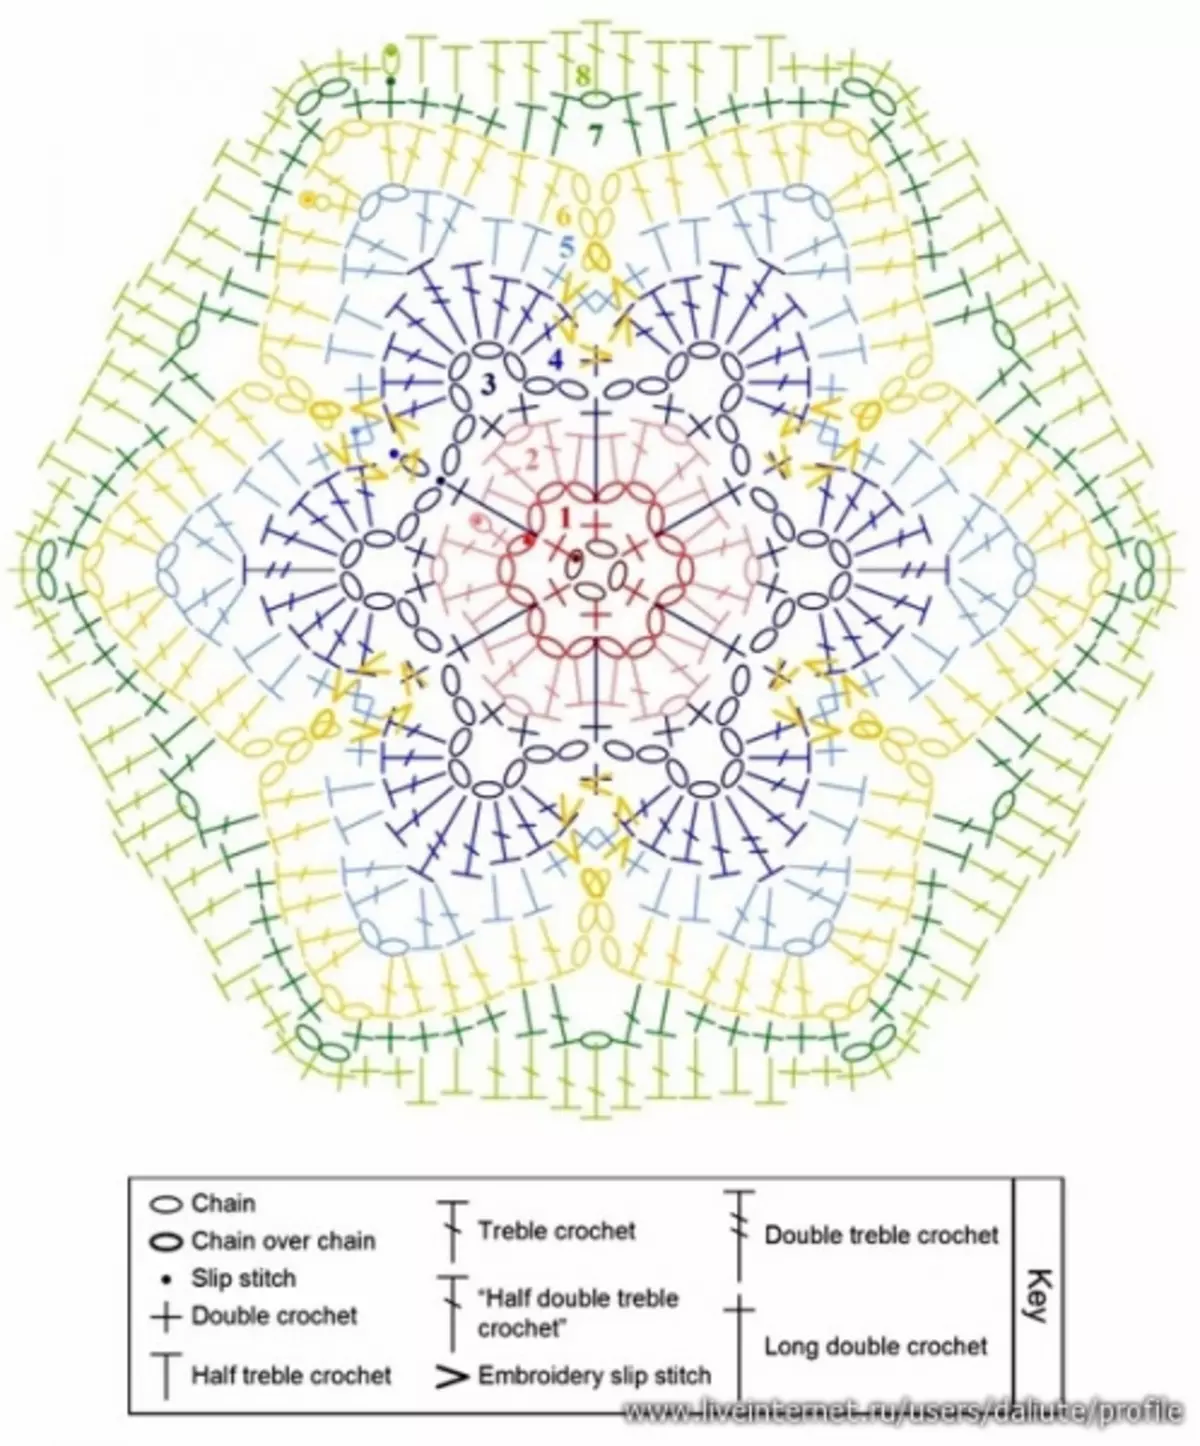 Crochet motifs schemes: Master class na may video.